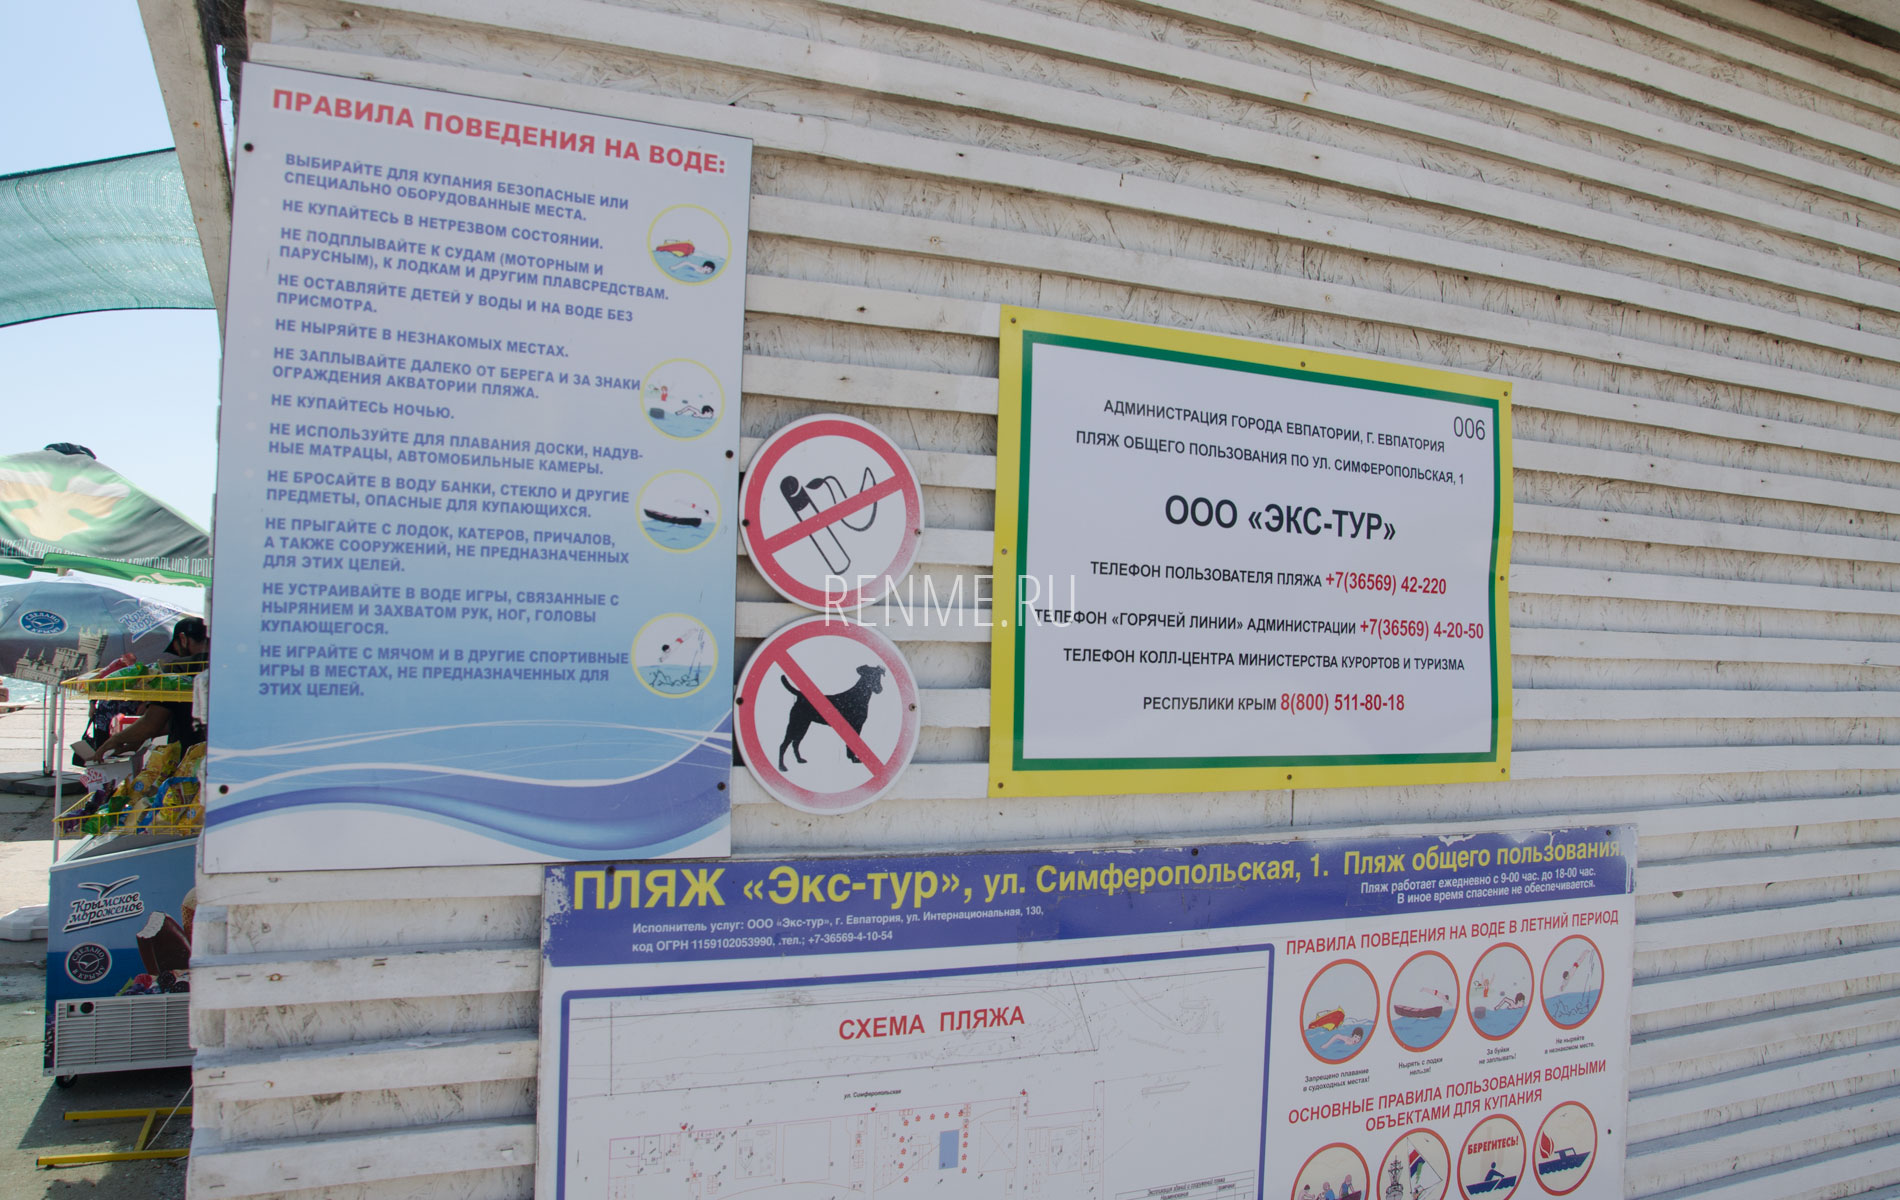 Информация о пляже "ЭКС-ТУР" в Евпатории. Фото Евпатории